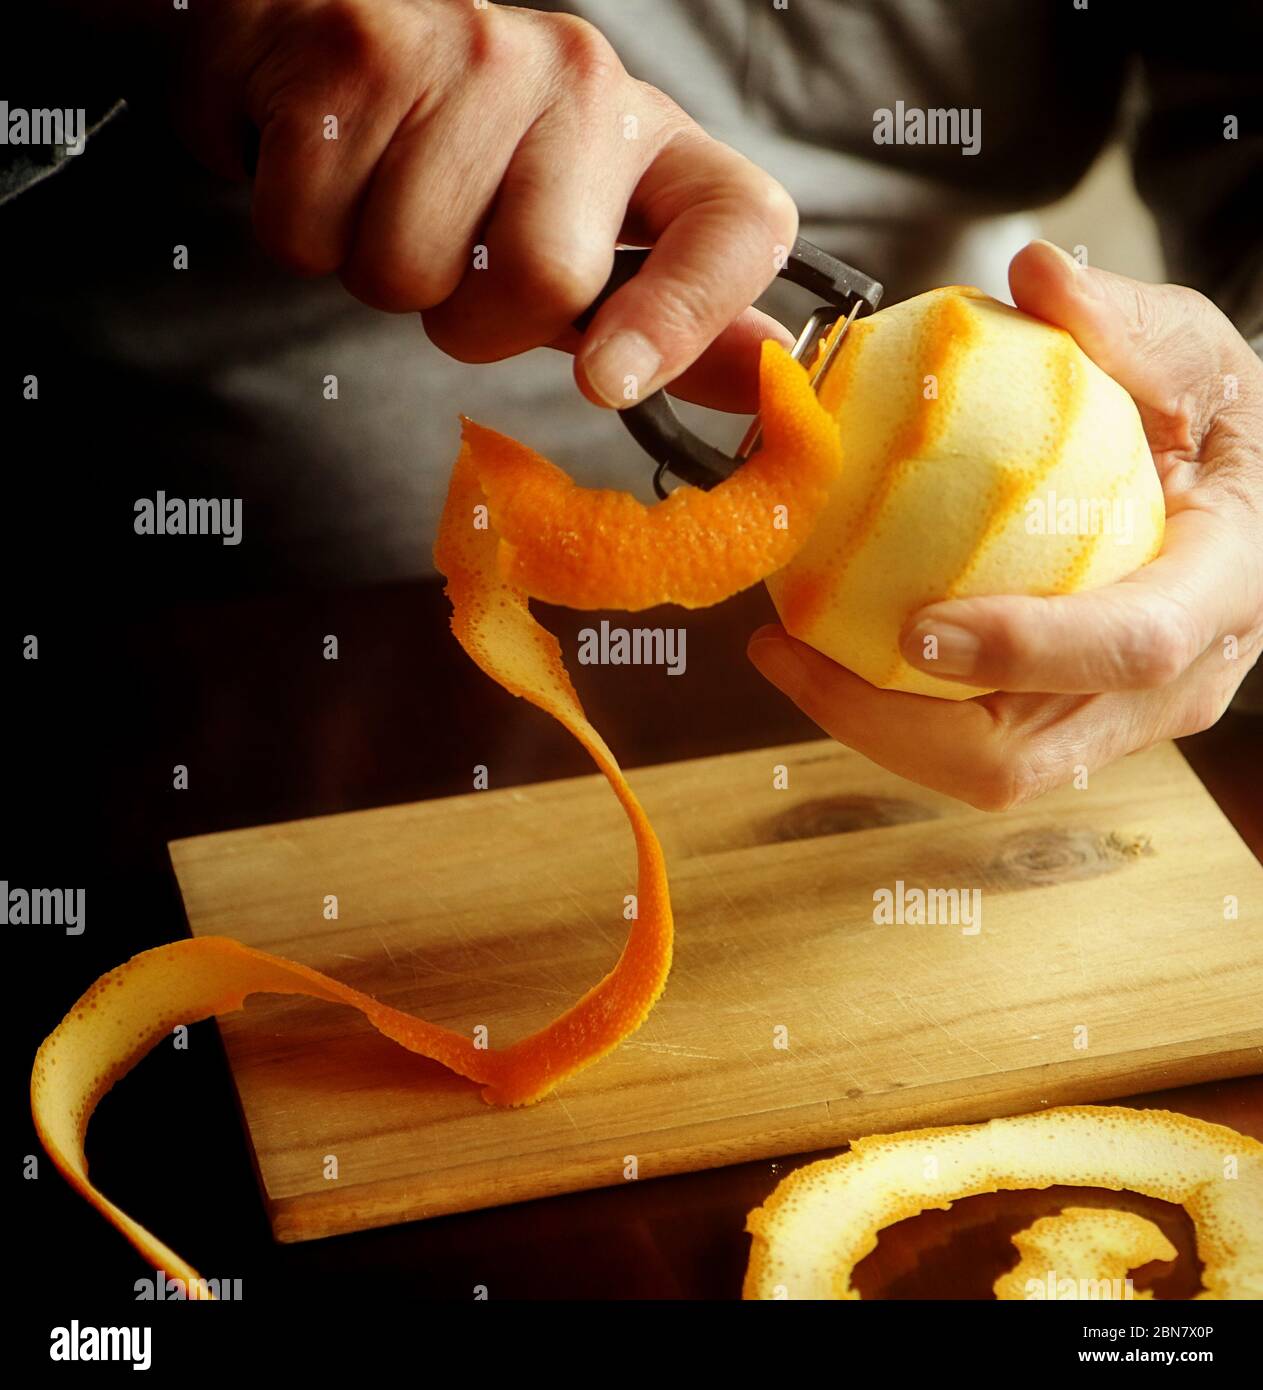 Preparazione della marmellata d'arancia: Rimozione della scorza d'arancia con un pelatore vegetale affilato, da aggiungere alla marmellata Foto Stock